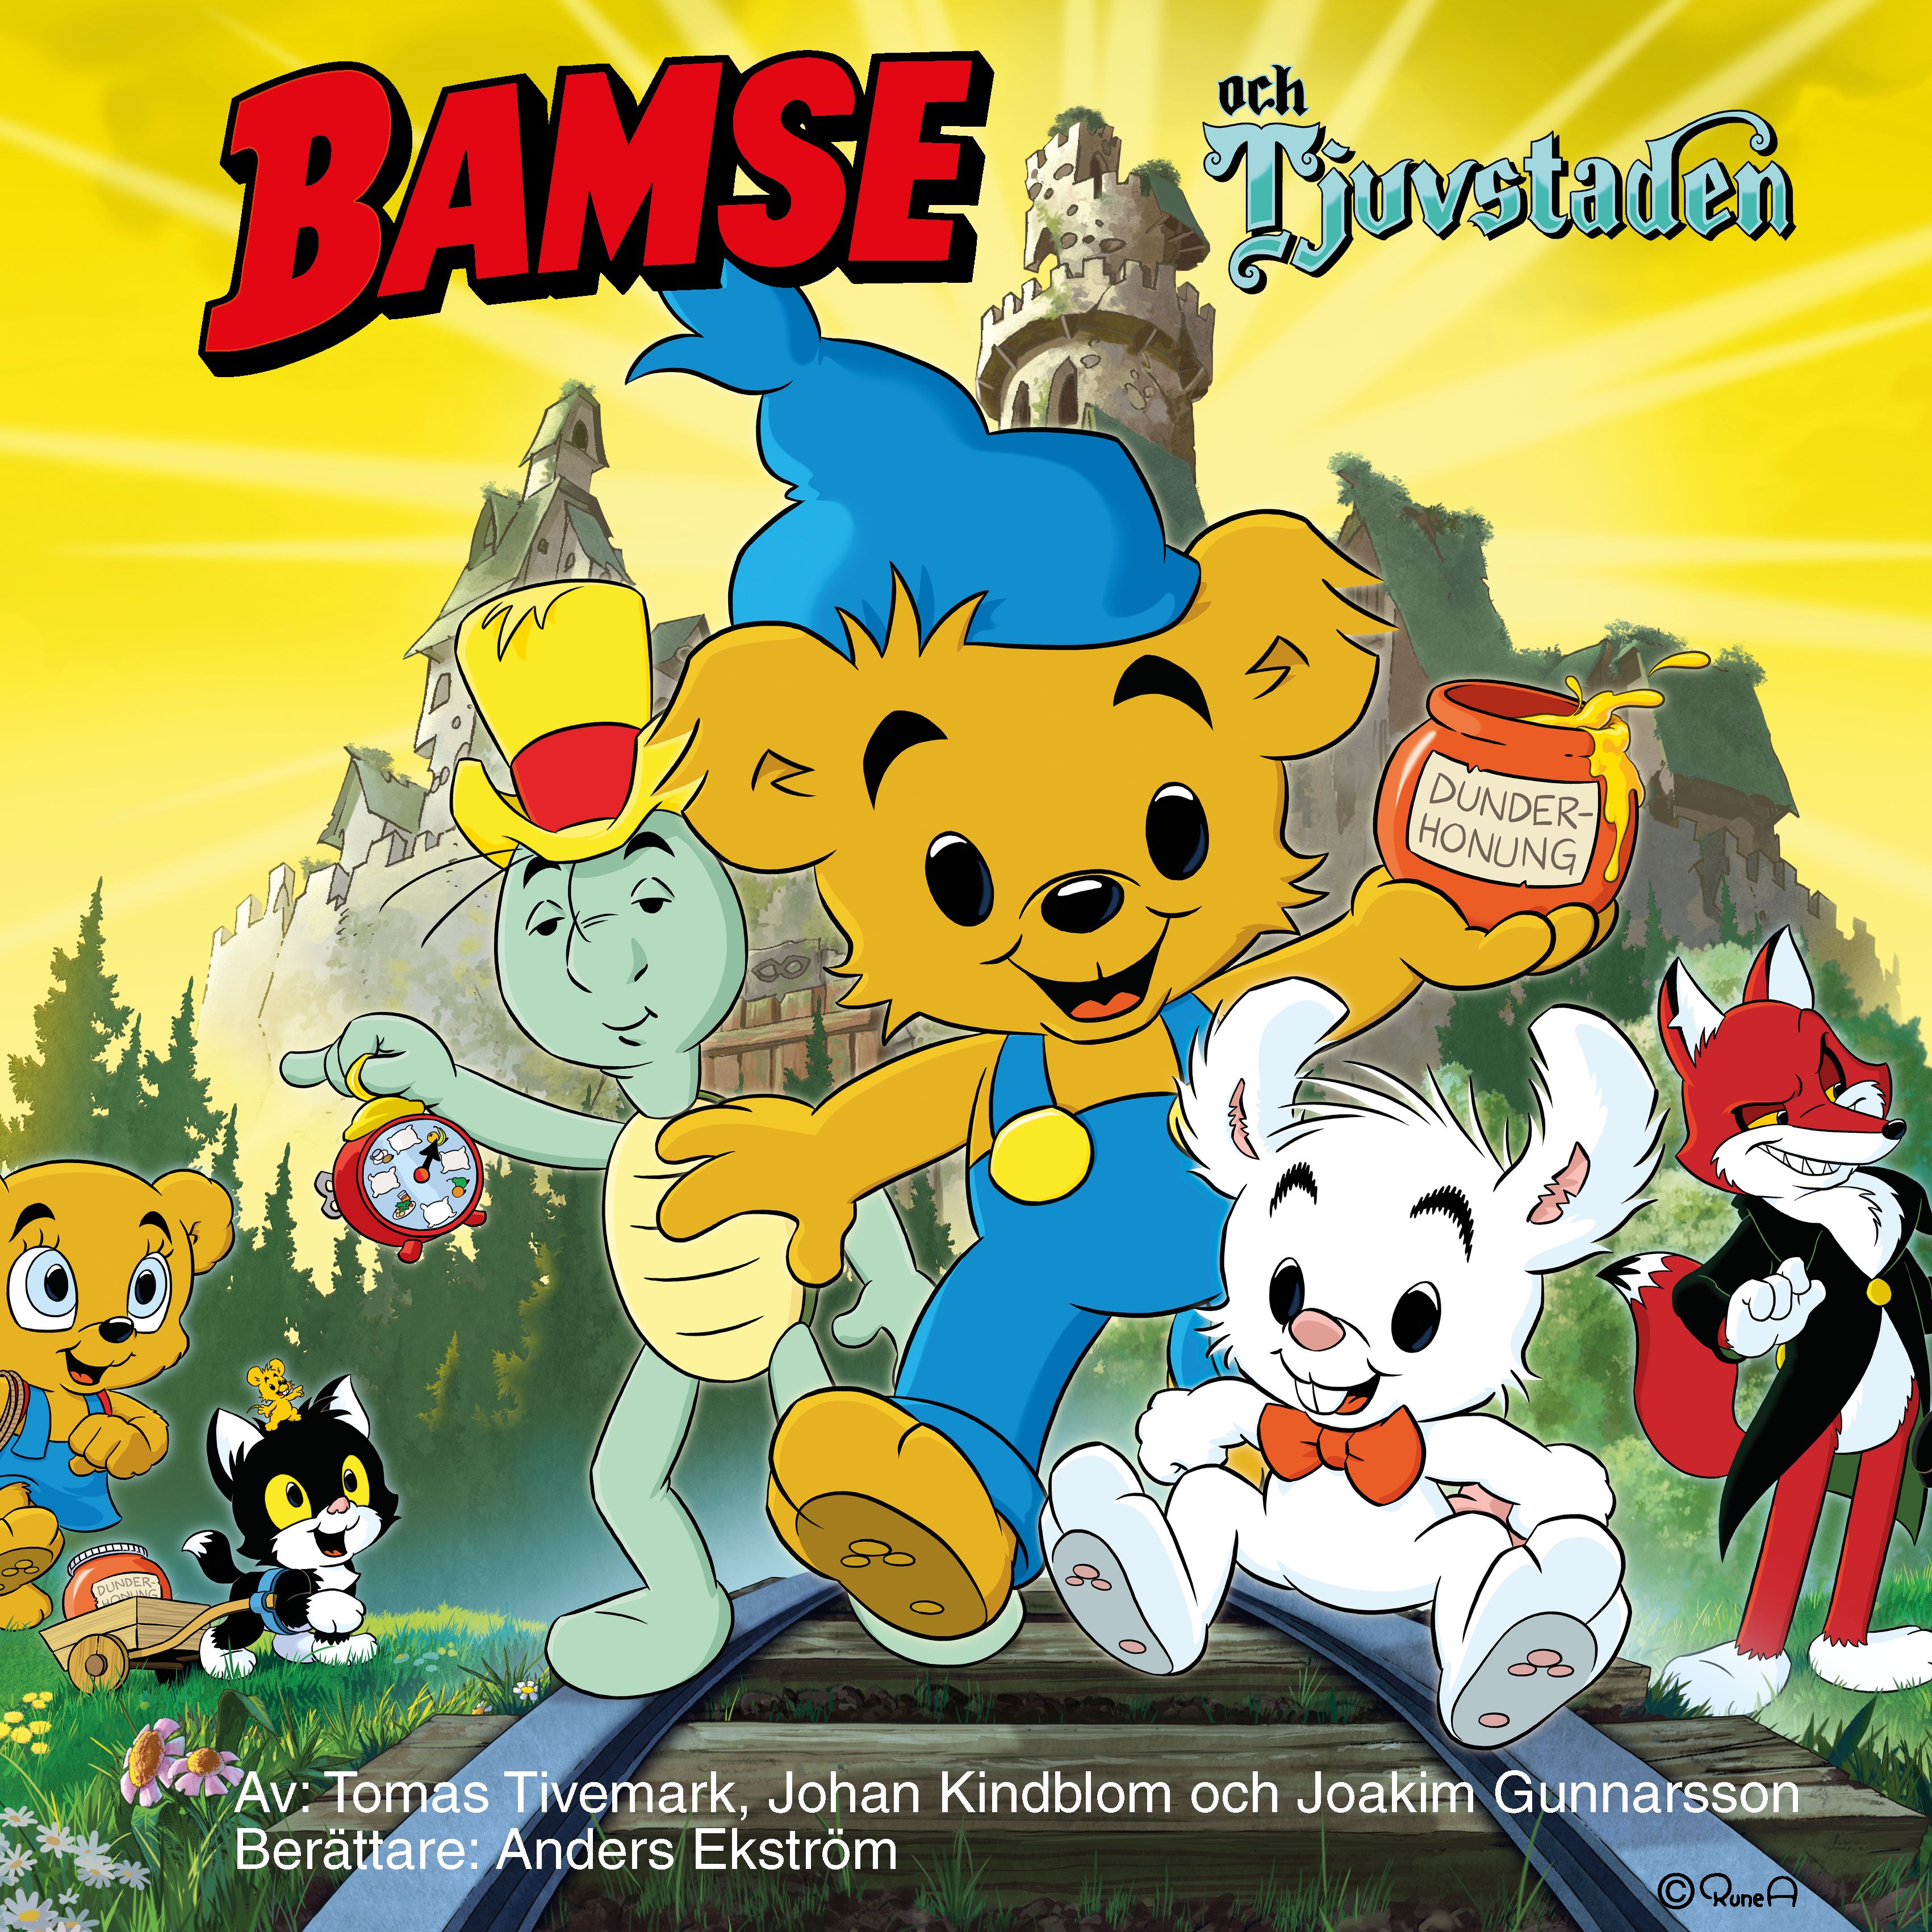 Bamse och Tjuvstaden, ljudbok av Joakim Gunnarsson, Johan Kindblom, Tomas Tivemark